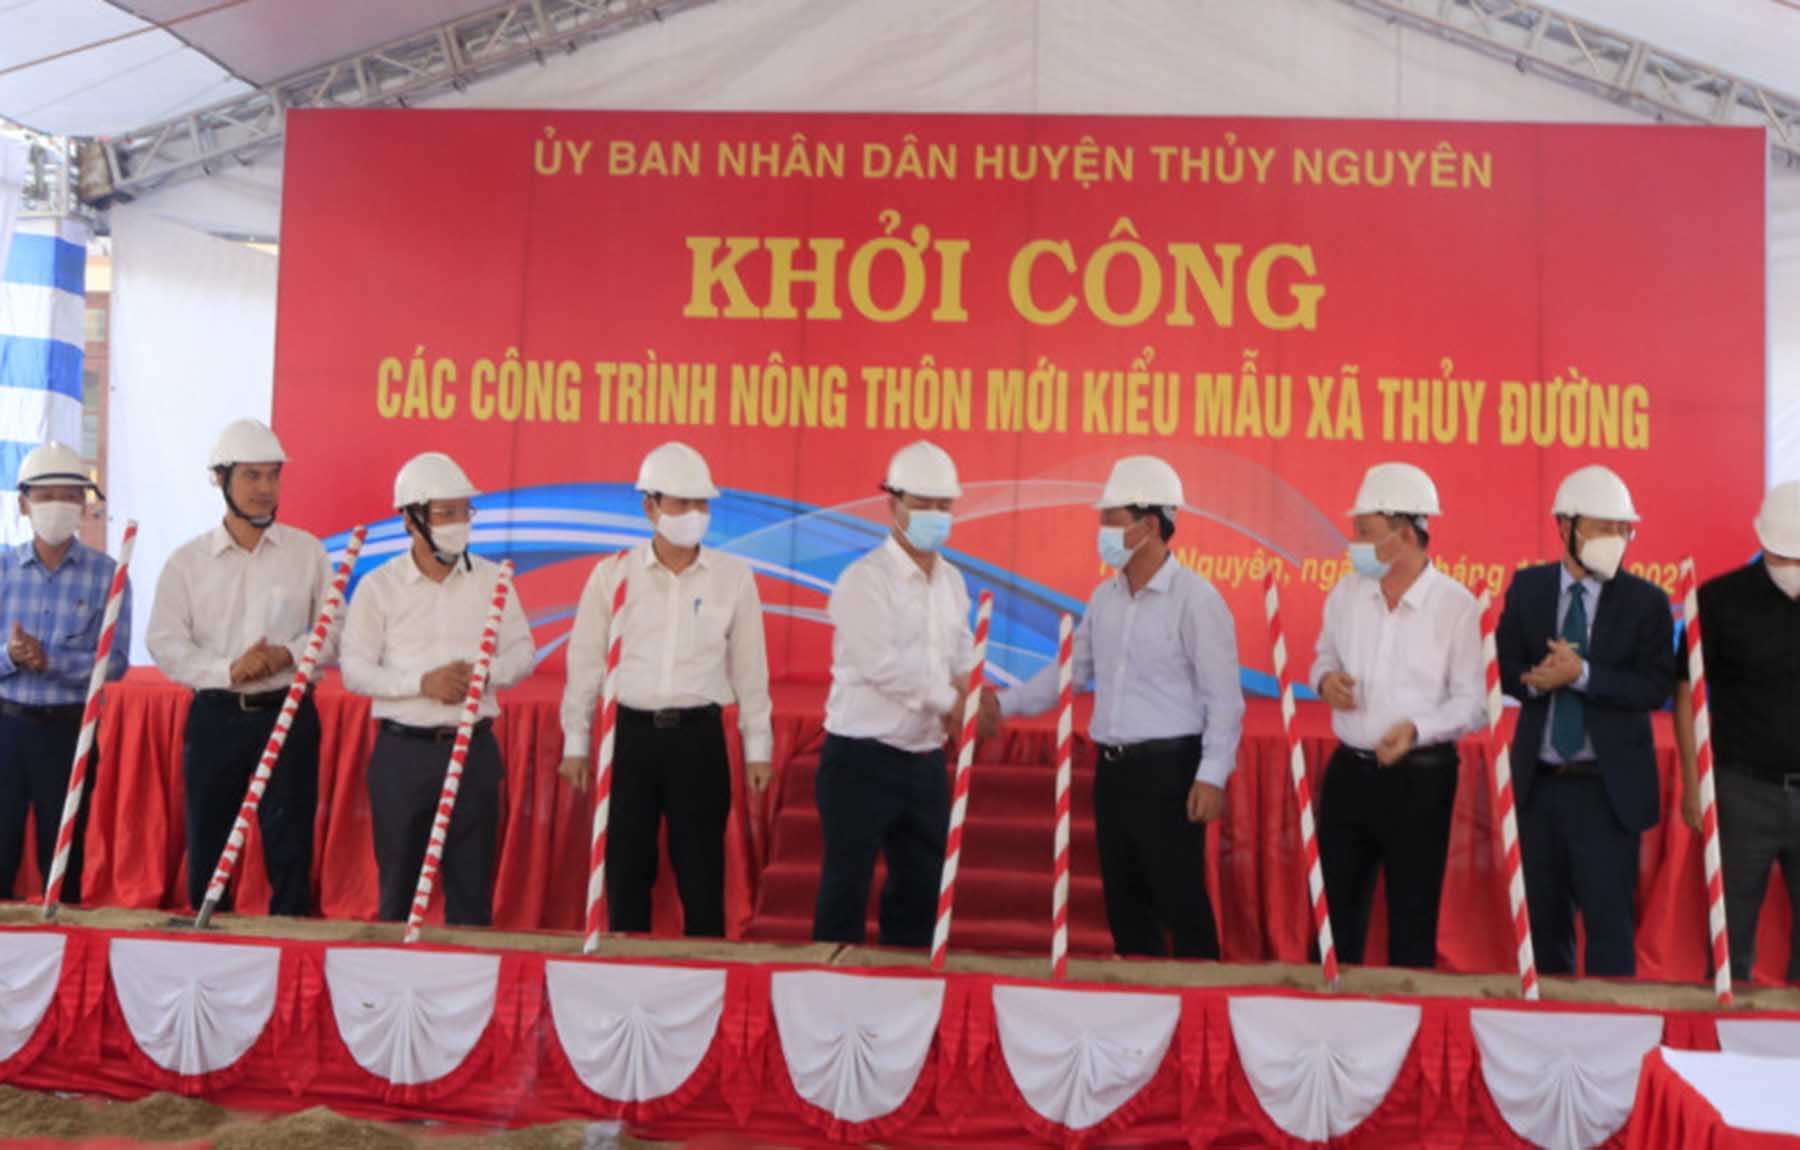 Khởi công xây dựng các công trình NTM kiểu mới tại xã Thủy Đường, Hòa Bình (Thủy Nguyên)